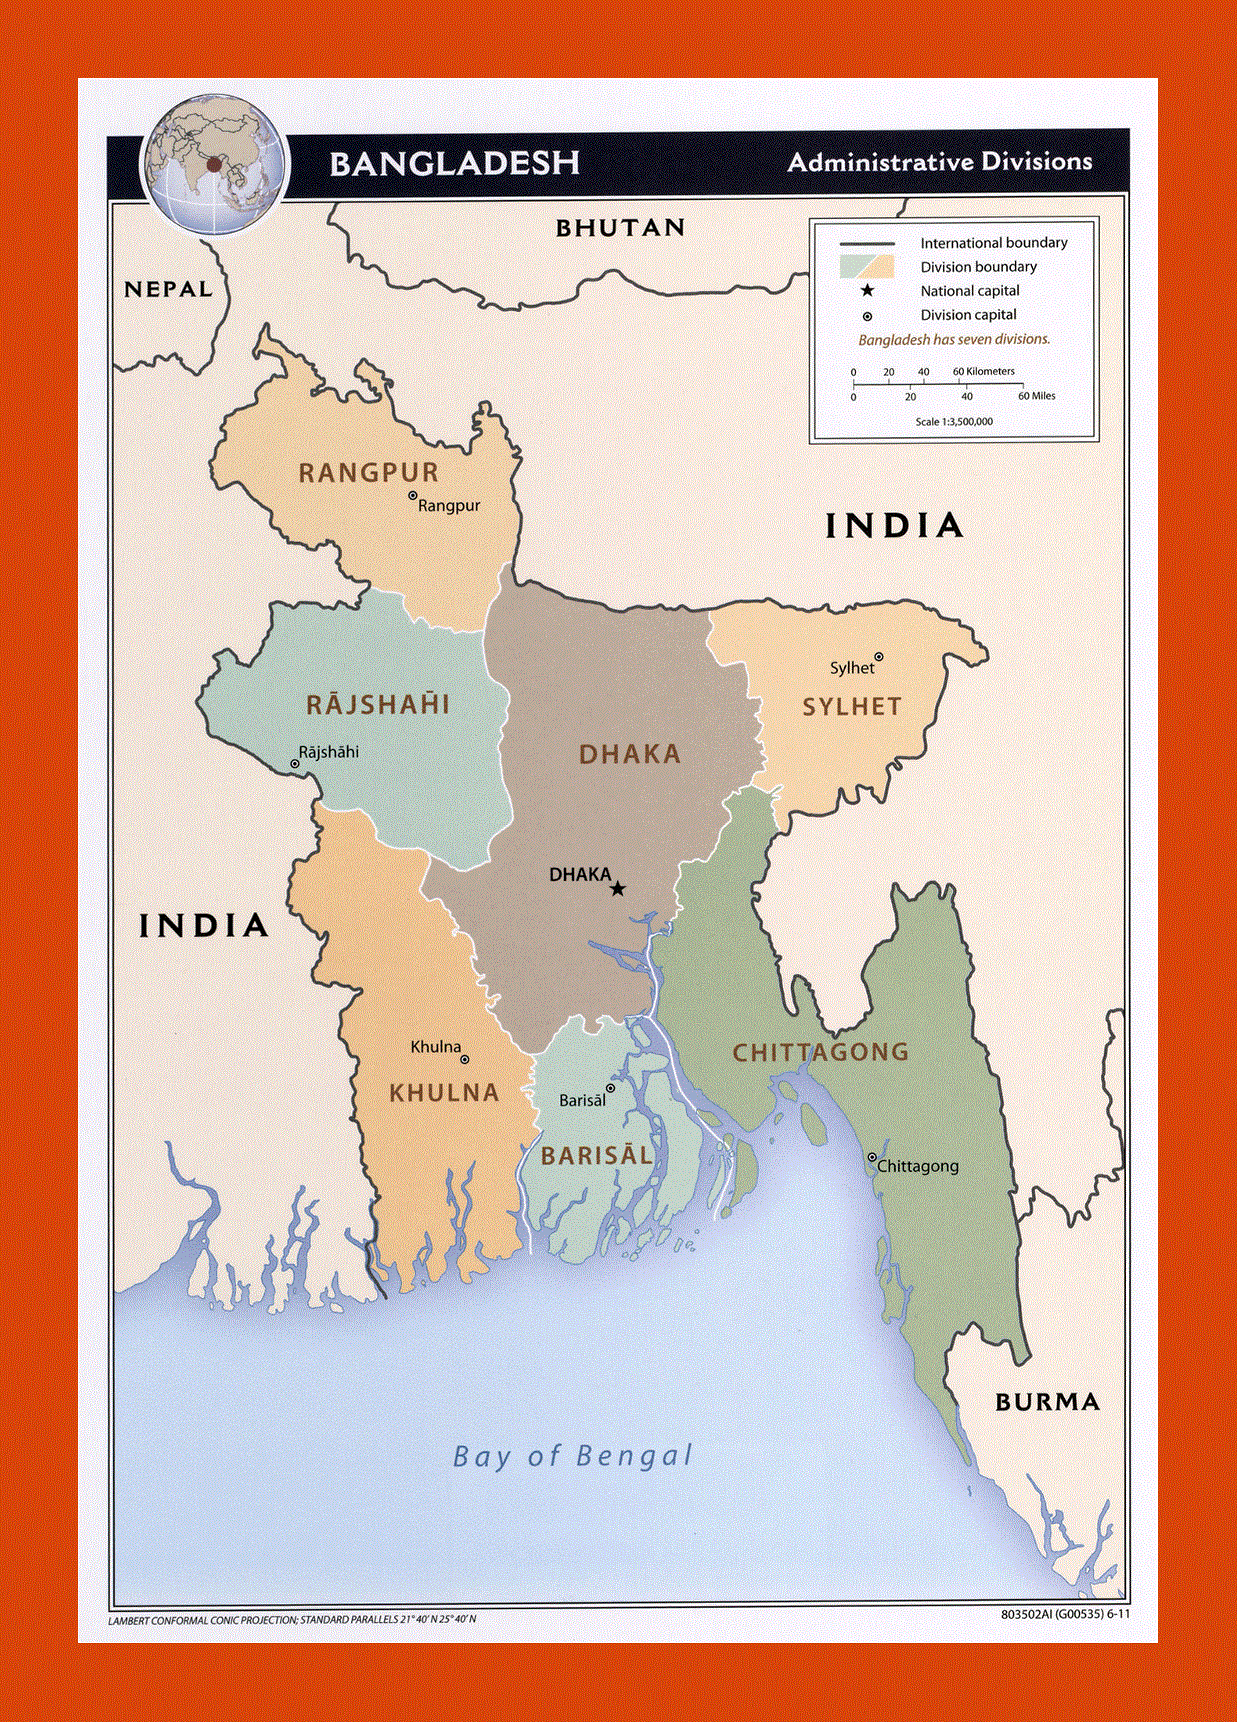 Administrative divisions map of Bangladesh - 2011